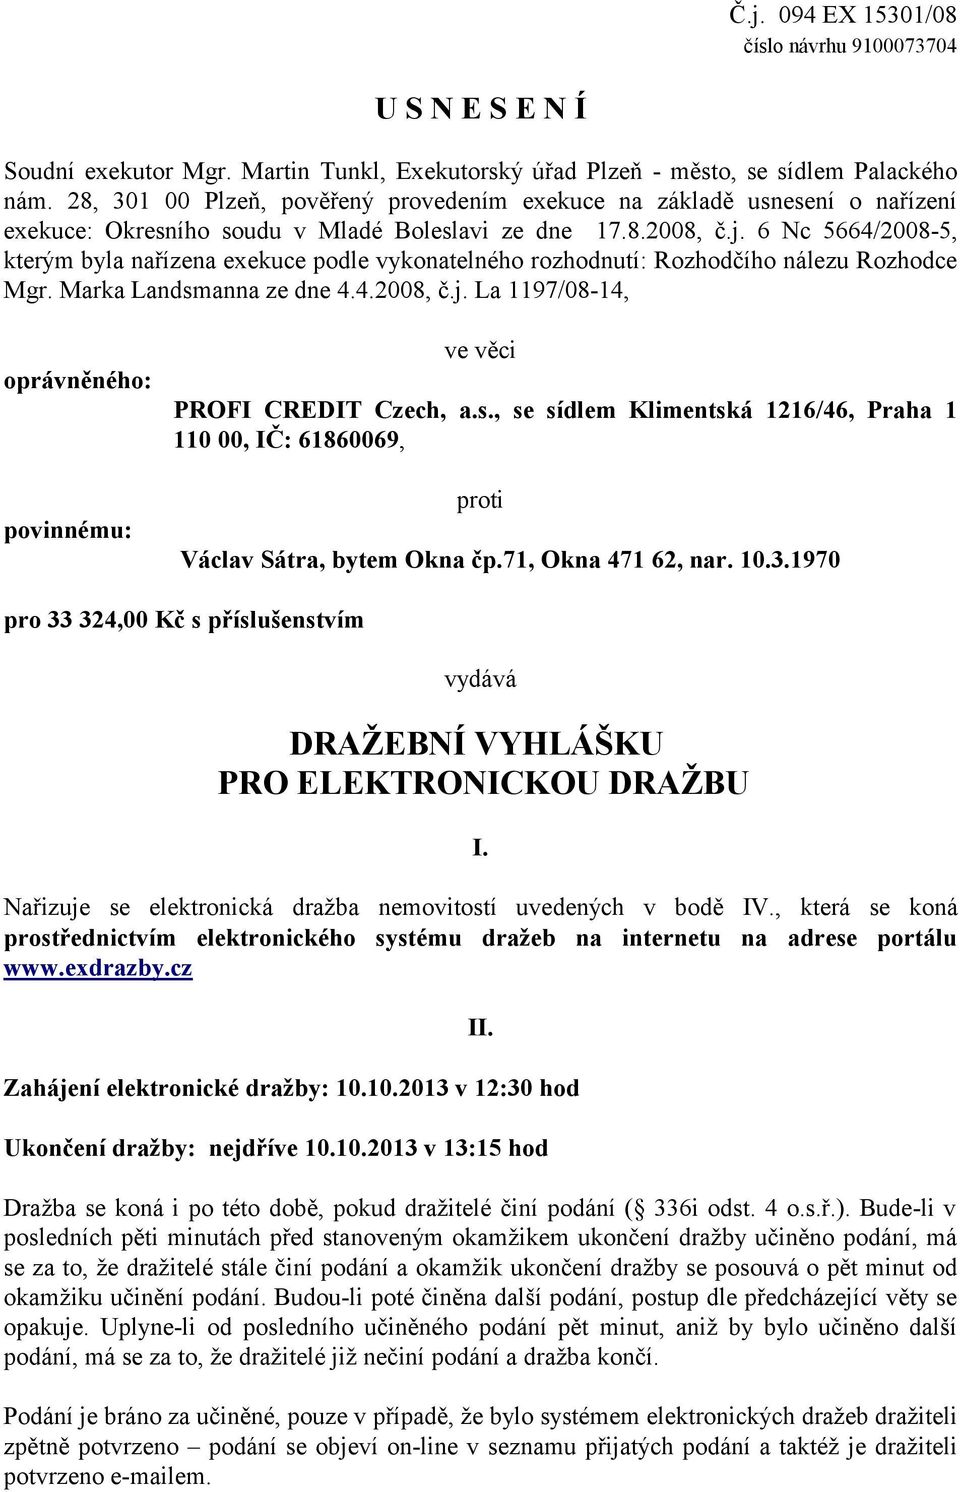 6 Nc 5664/2008-5, kterým byla nařízena exekuce podle vykonatelného rozhodnutí: Rozhodčího nálezu Rozhodce Mgr. Marka Landsmanna ze dne 4.4.2008, č.j.